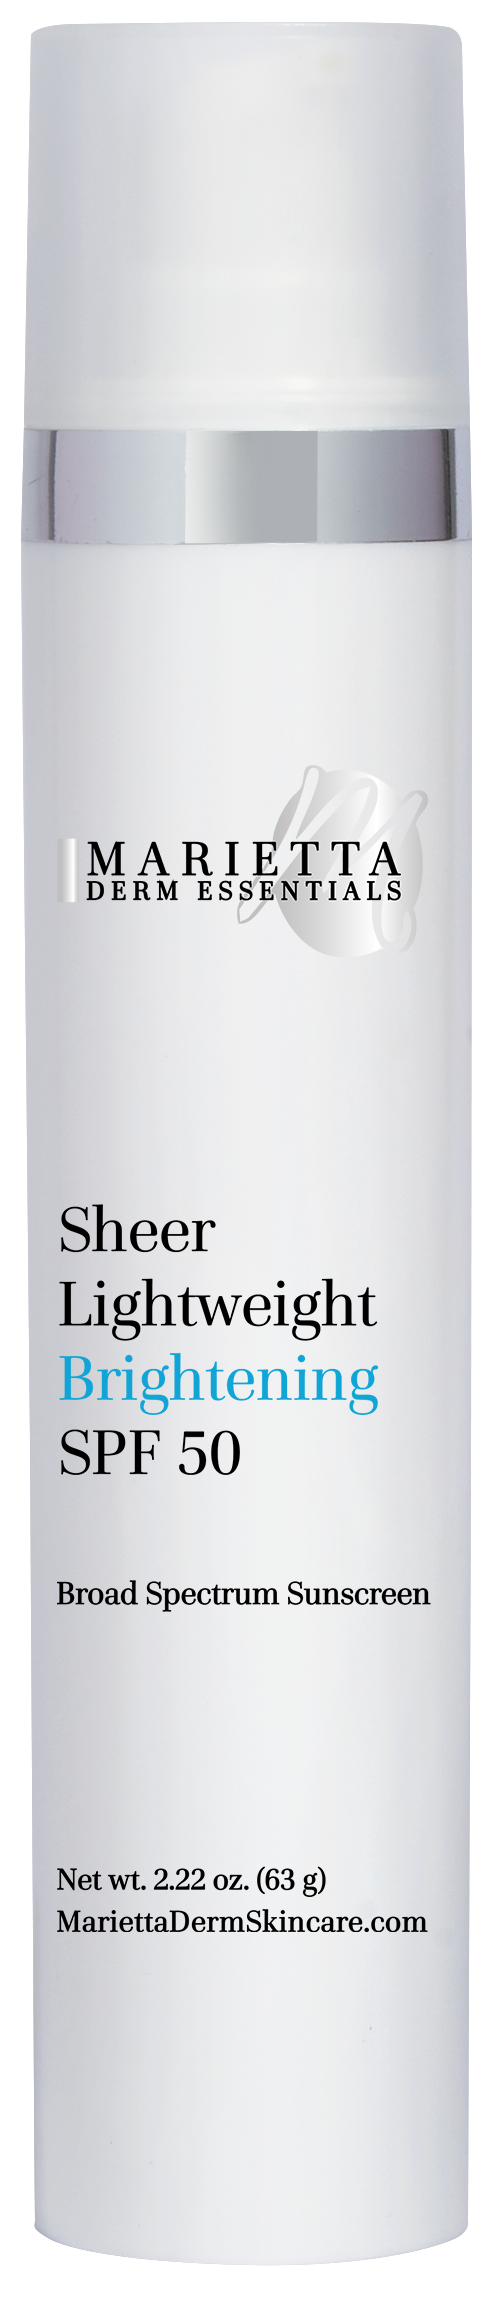 Sheer Lightweight Brightening SPF 50